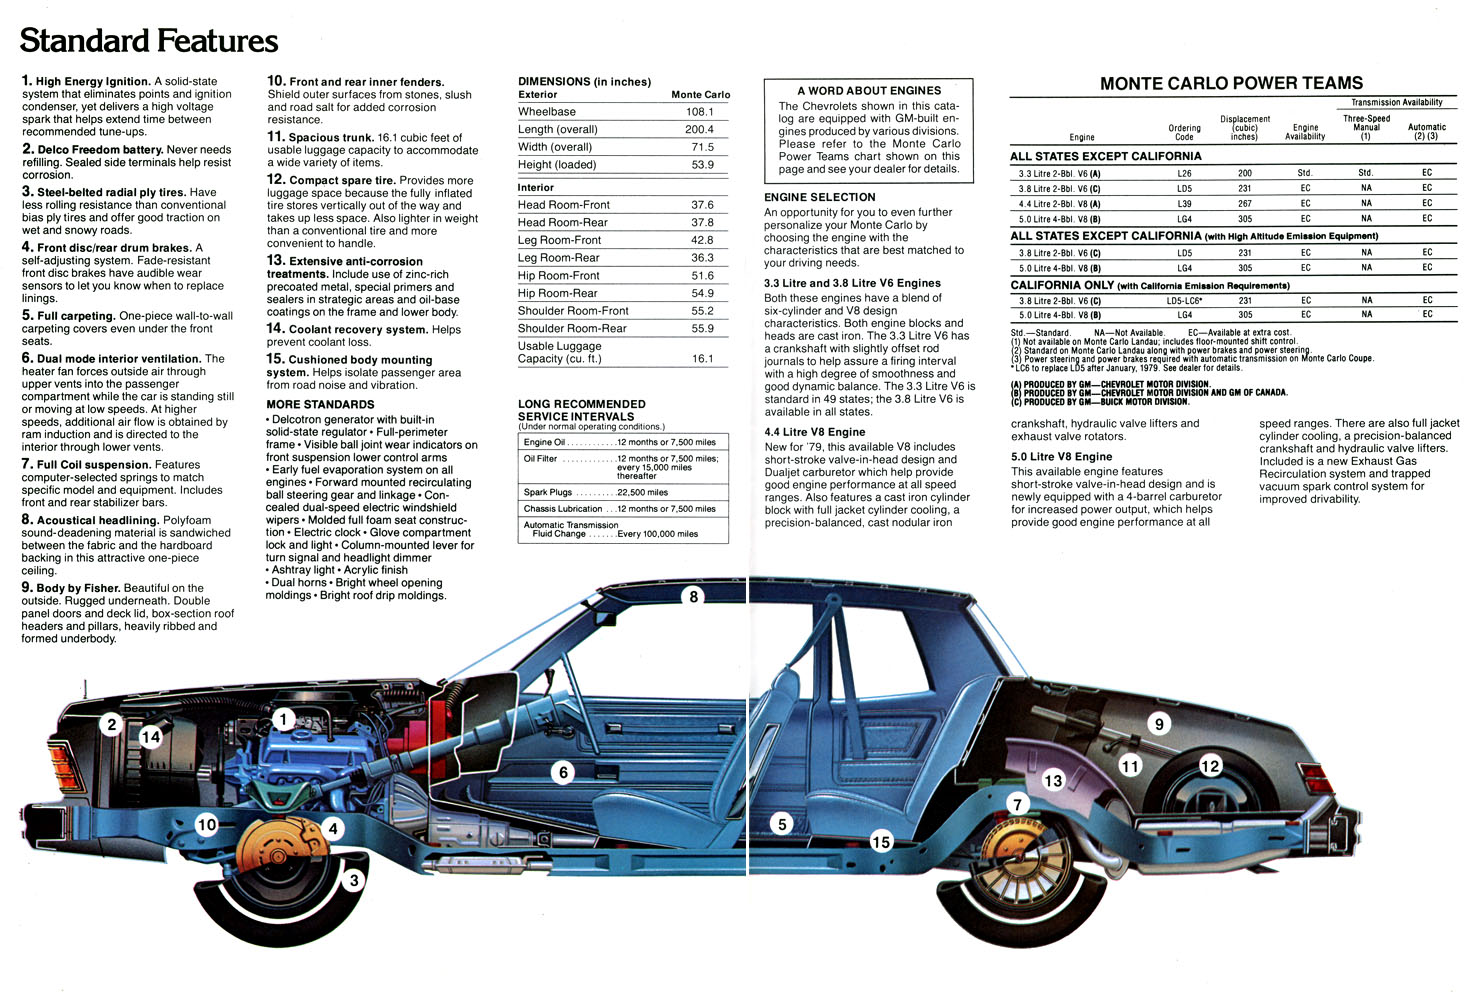 1979 Monte Carlo OEM Brochure (6)